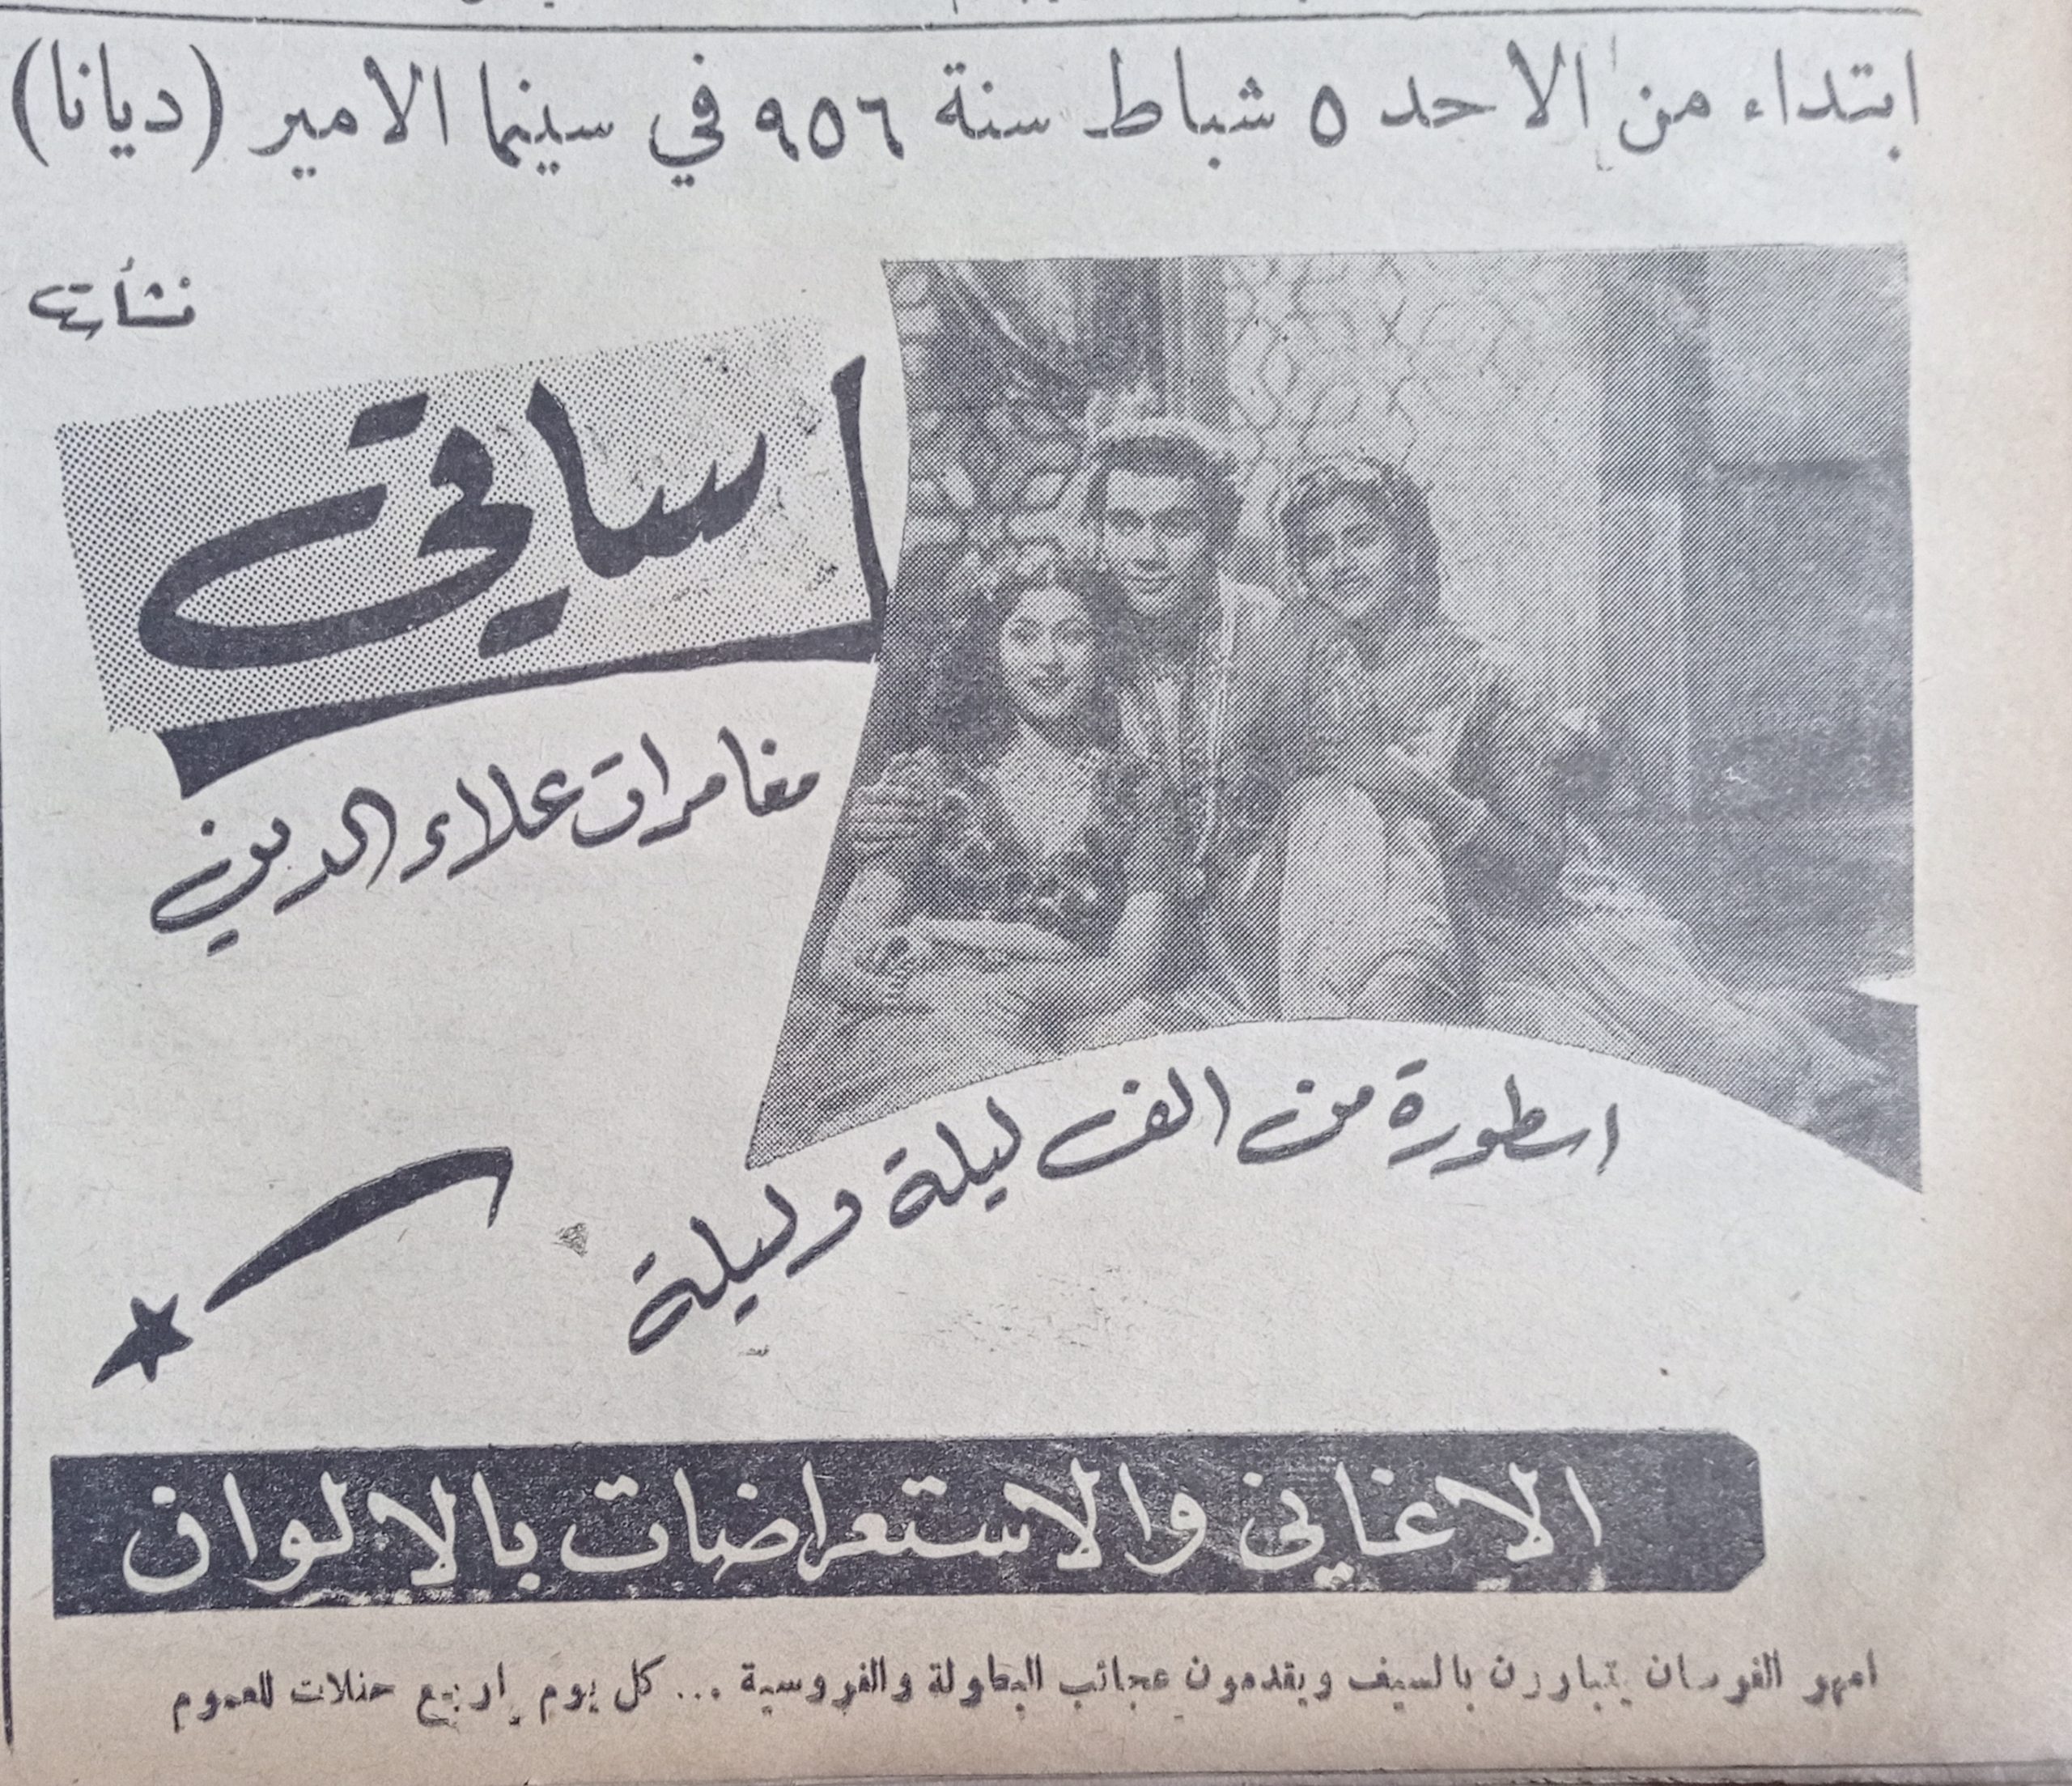 التاريخ السوري المعاصر - إعلان فيلم (مغامرات علاء الدين) في سينما الأمير في حلب عام 1956